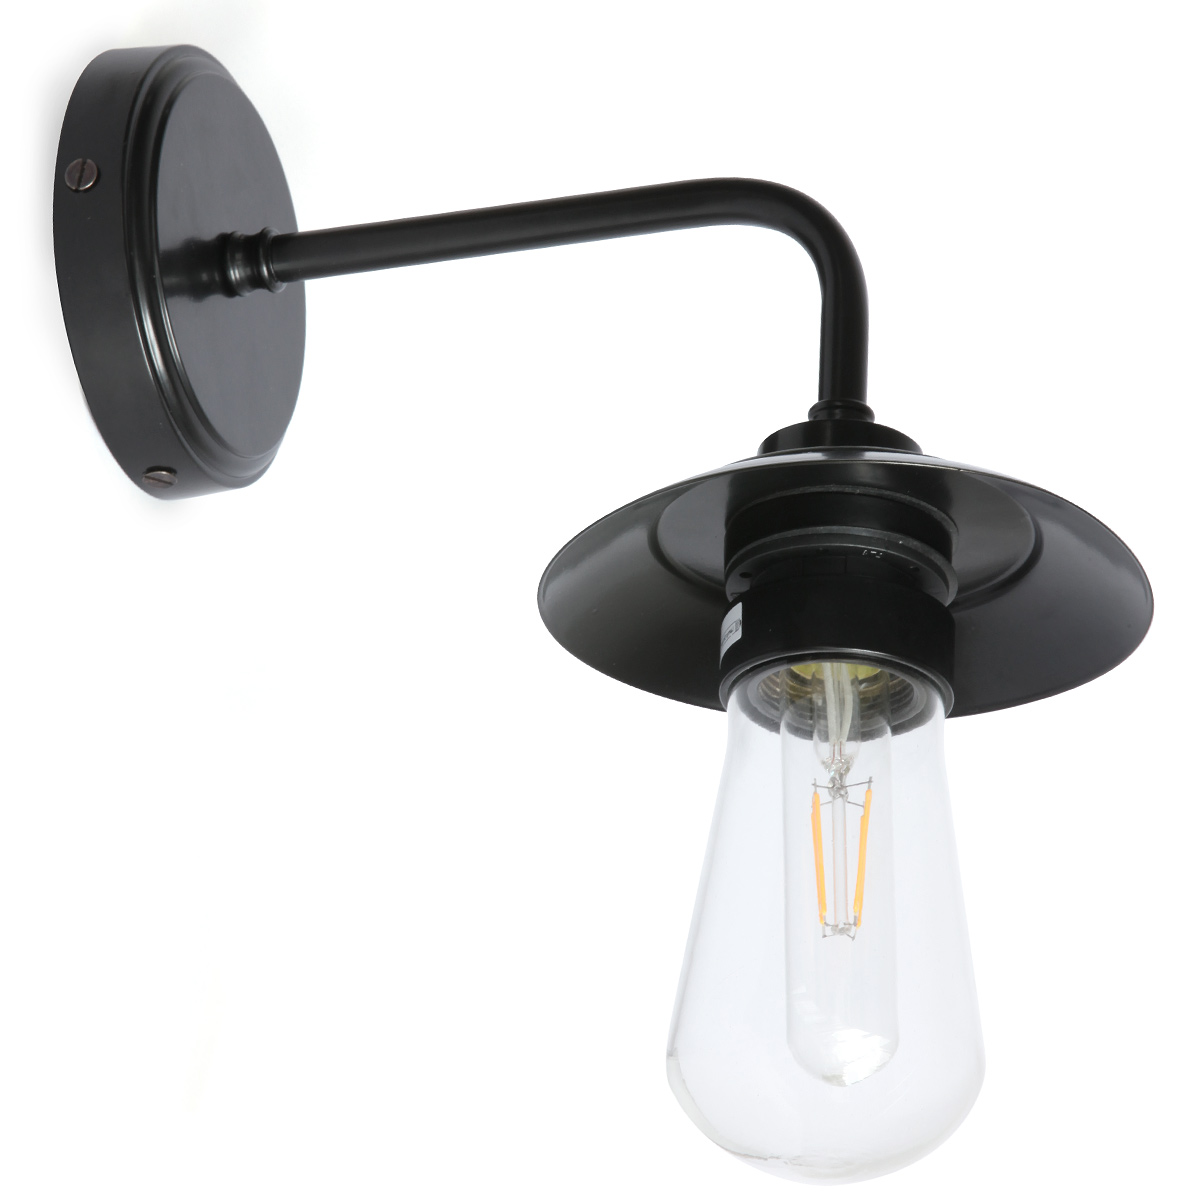 Schlichte Wandlampe mit Schirmchen und Glaskolben, IP65: Wandlampe mit wasserdichtem Glaskolben und kleinem Schirm, hier matt-schwarz pulverbeschichtet